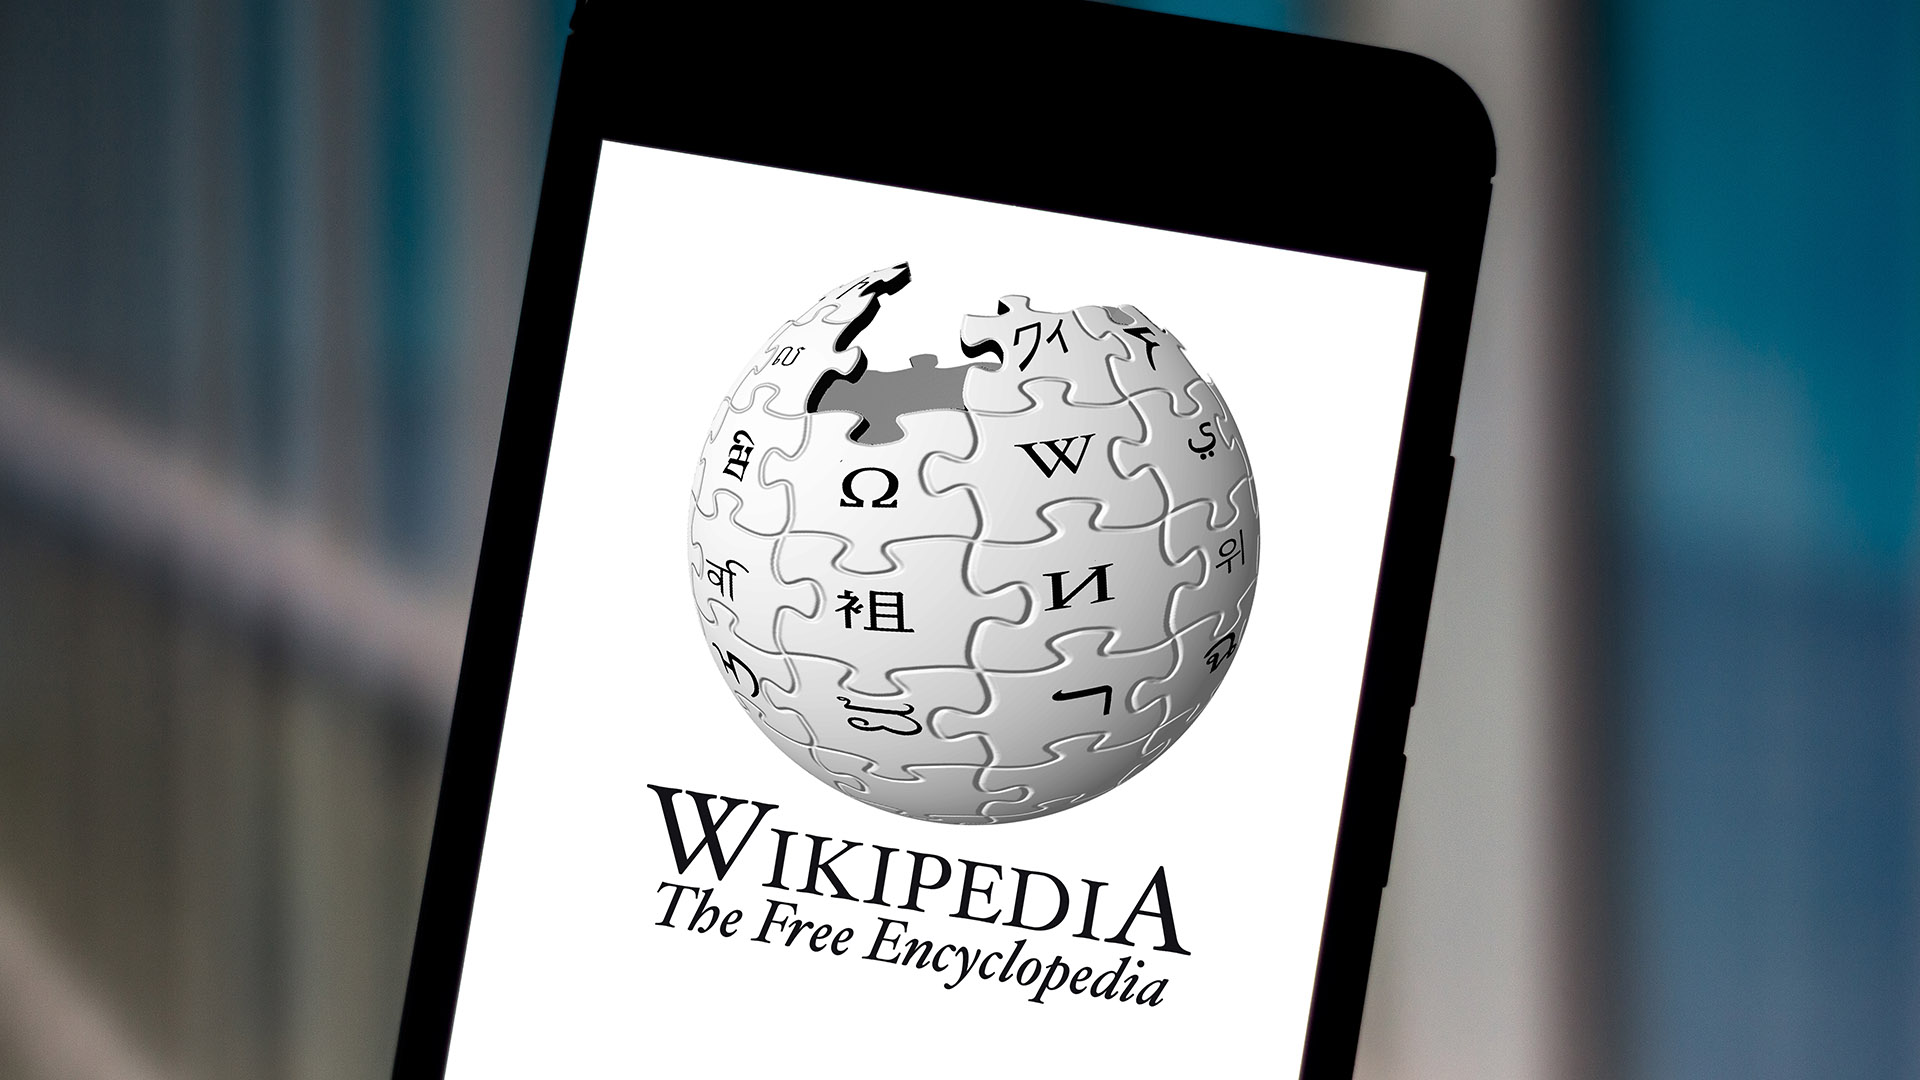 Steven Pruitt je najaktívnejším redaktorom Wikipédie. Má na konte 4,4 milióna úprav a tisíce článkov